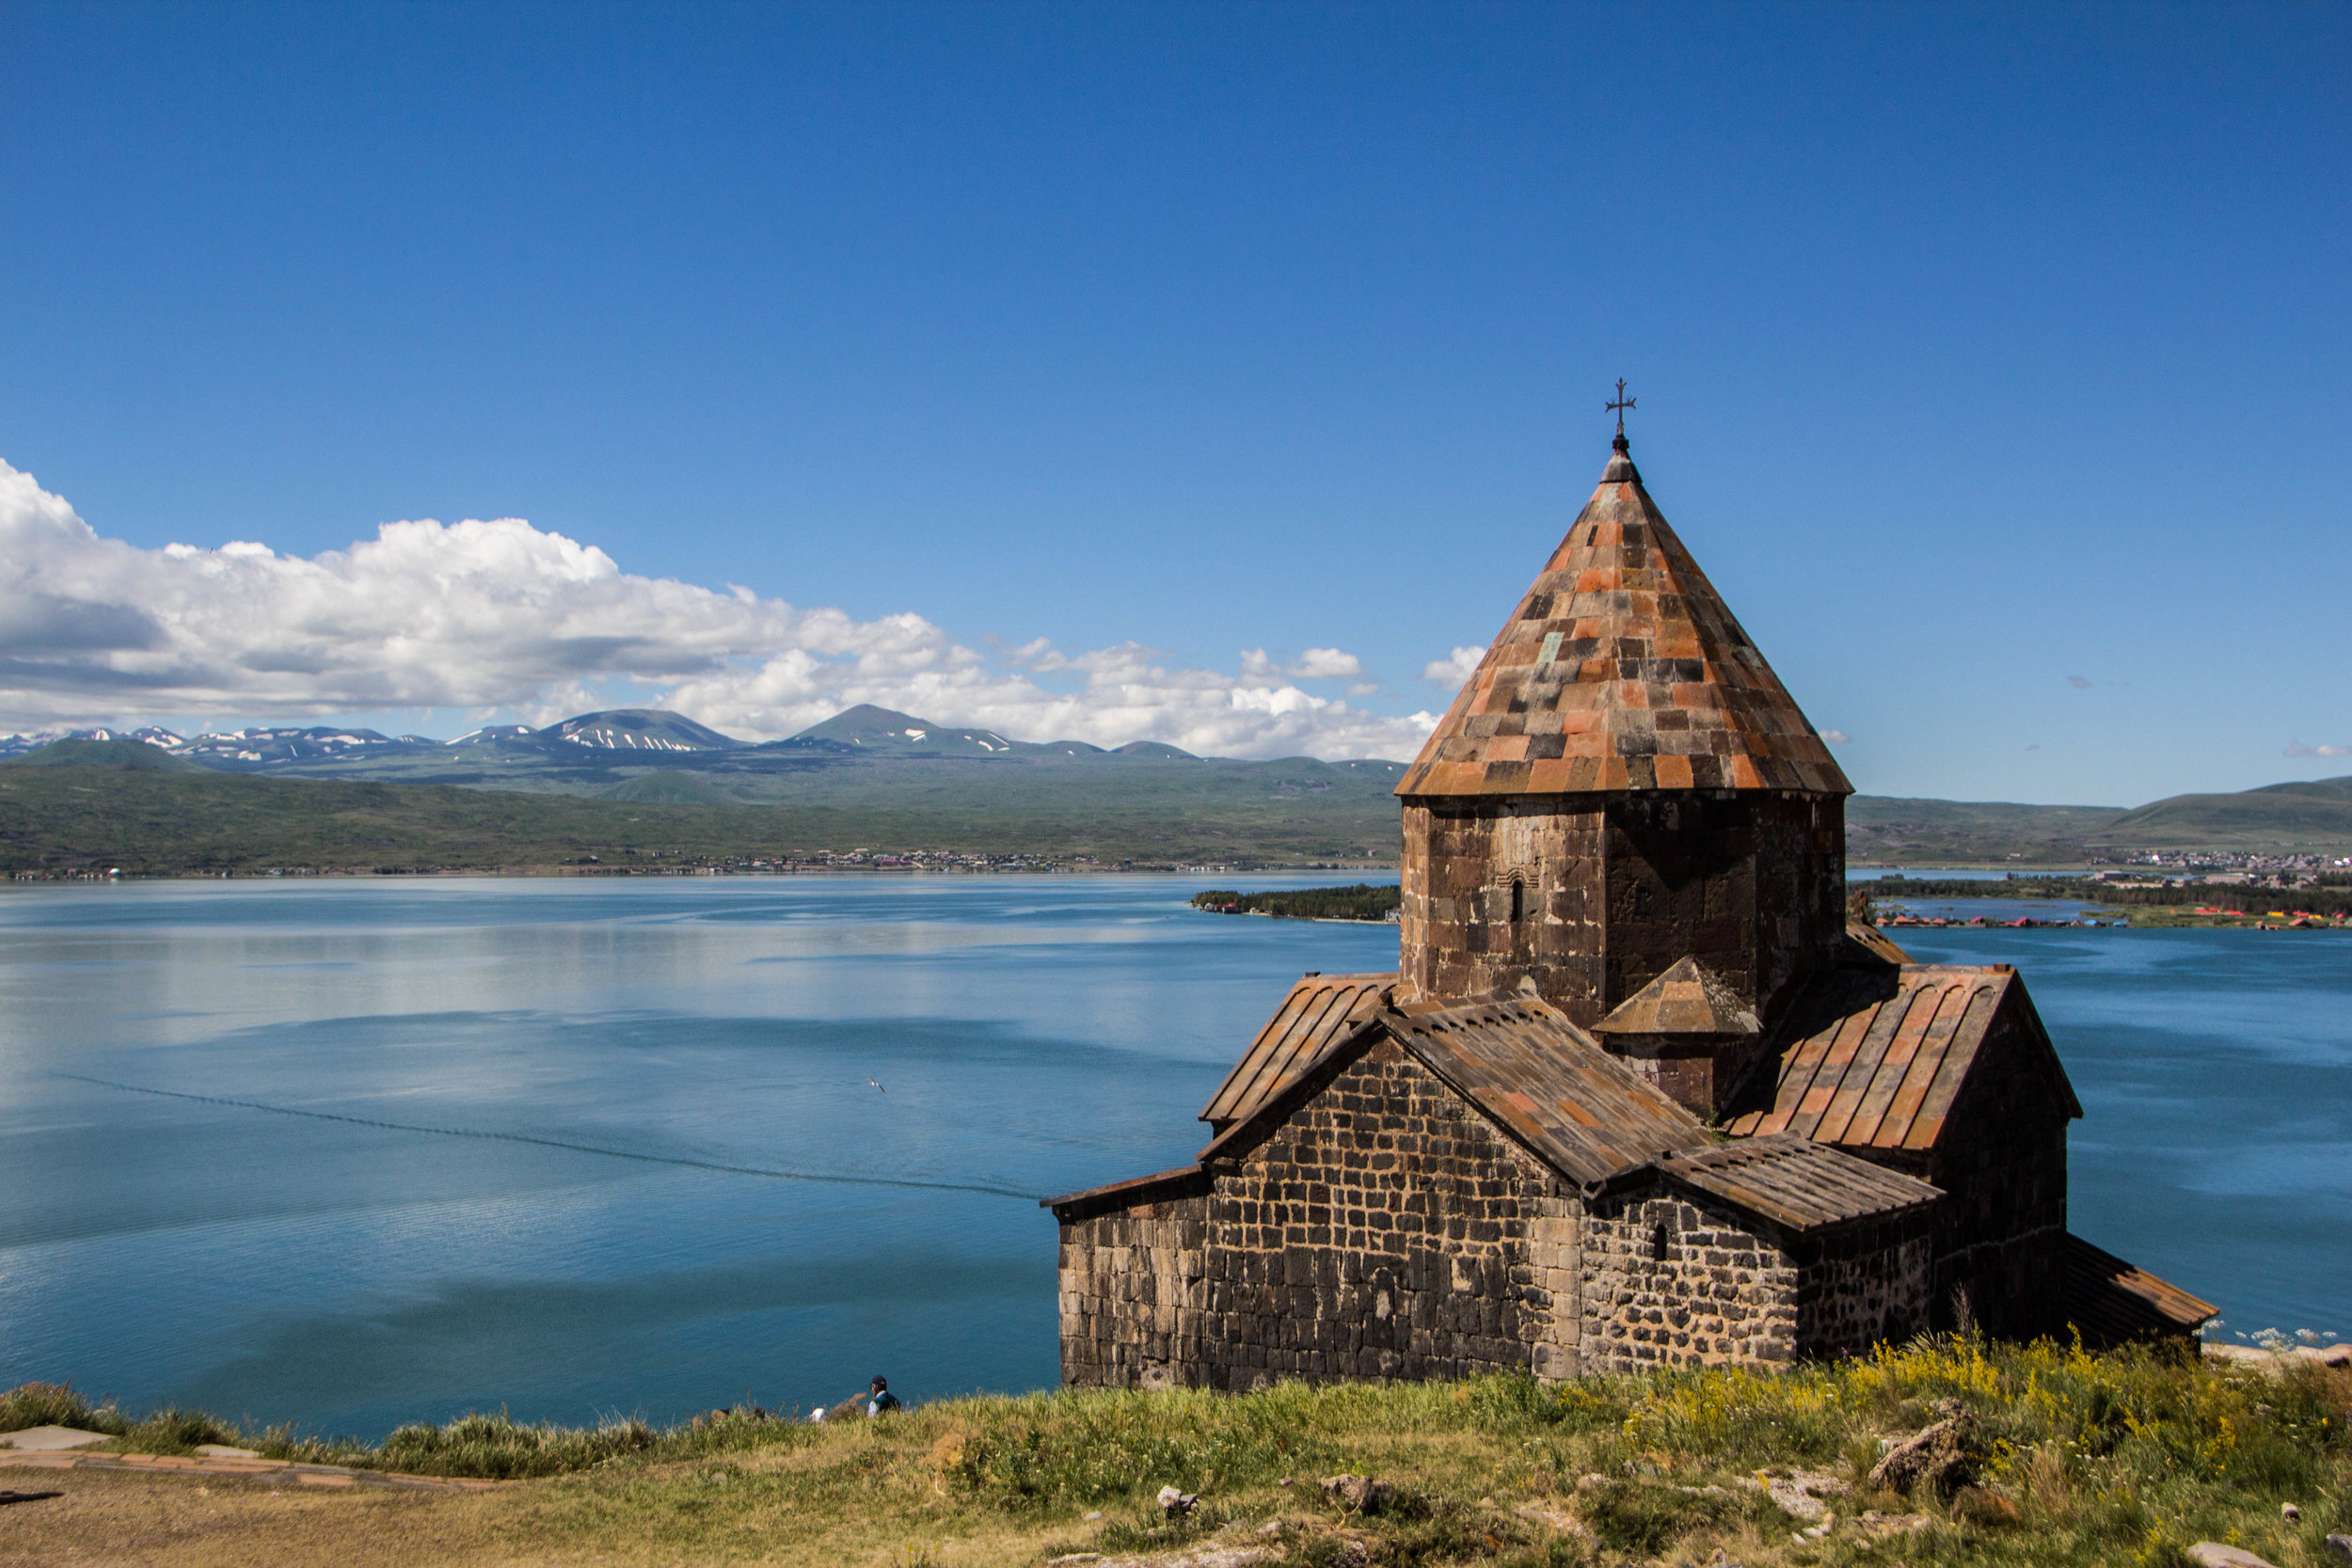 Peter Explores Armenia's Lake Sevan | Peter's Big Adventure